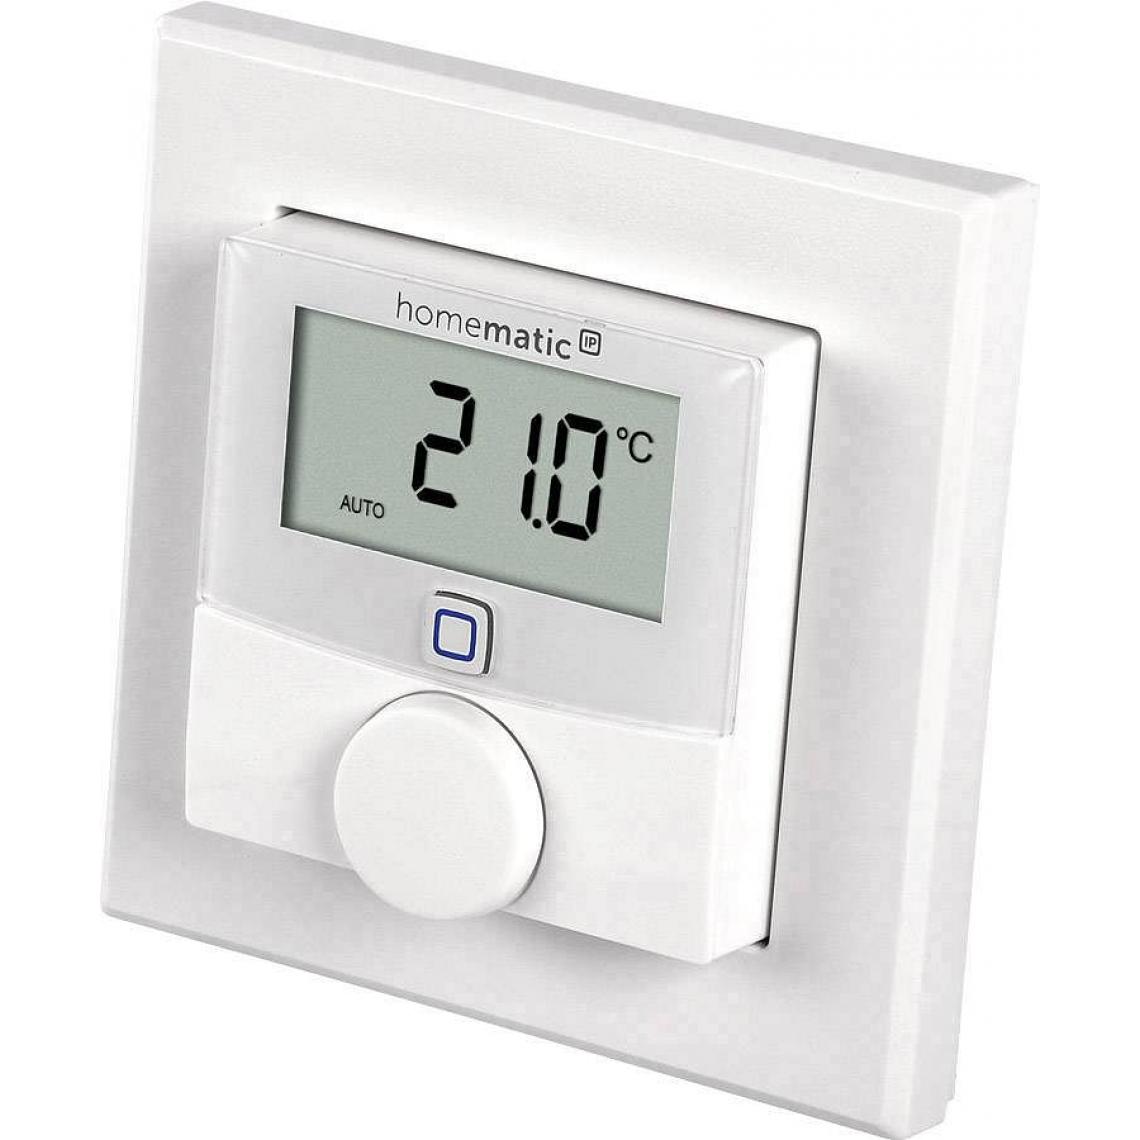 Homematic Ip - Thermostat mural sans fil - Homematic Ip - Détecteur connecté